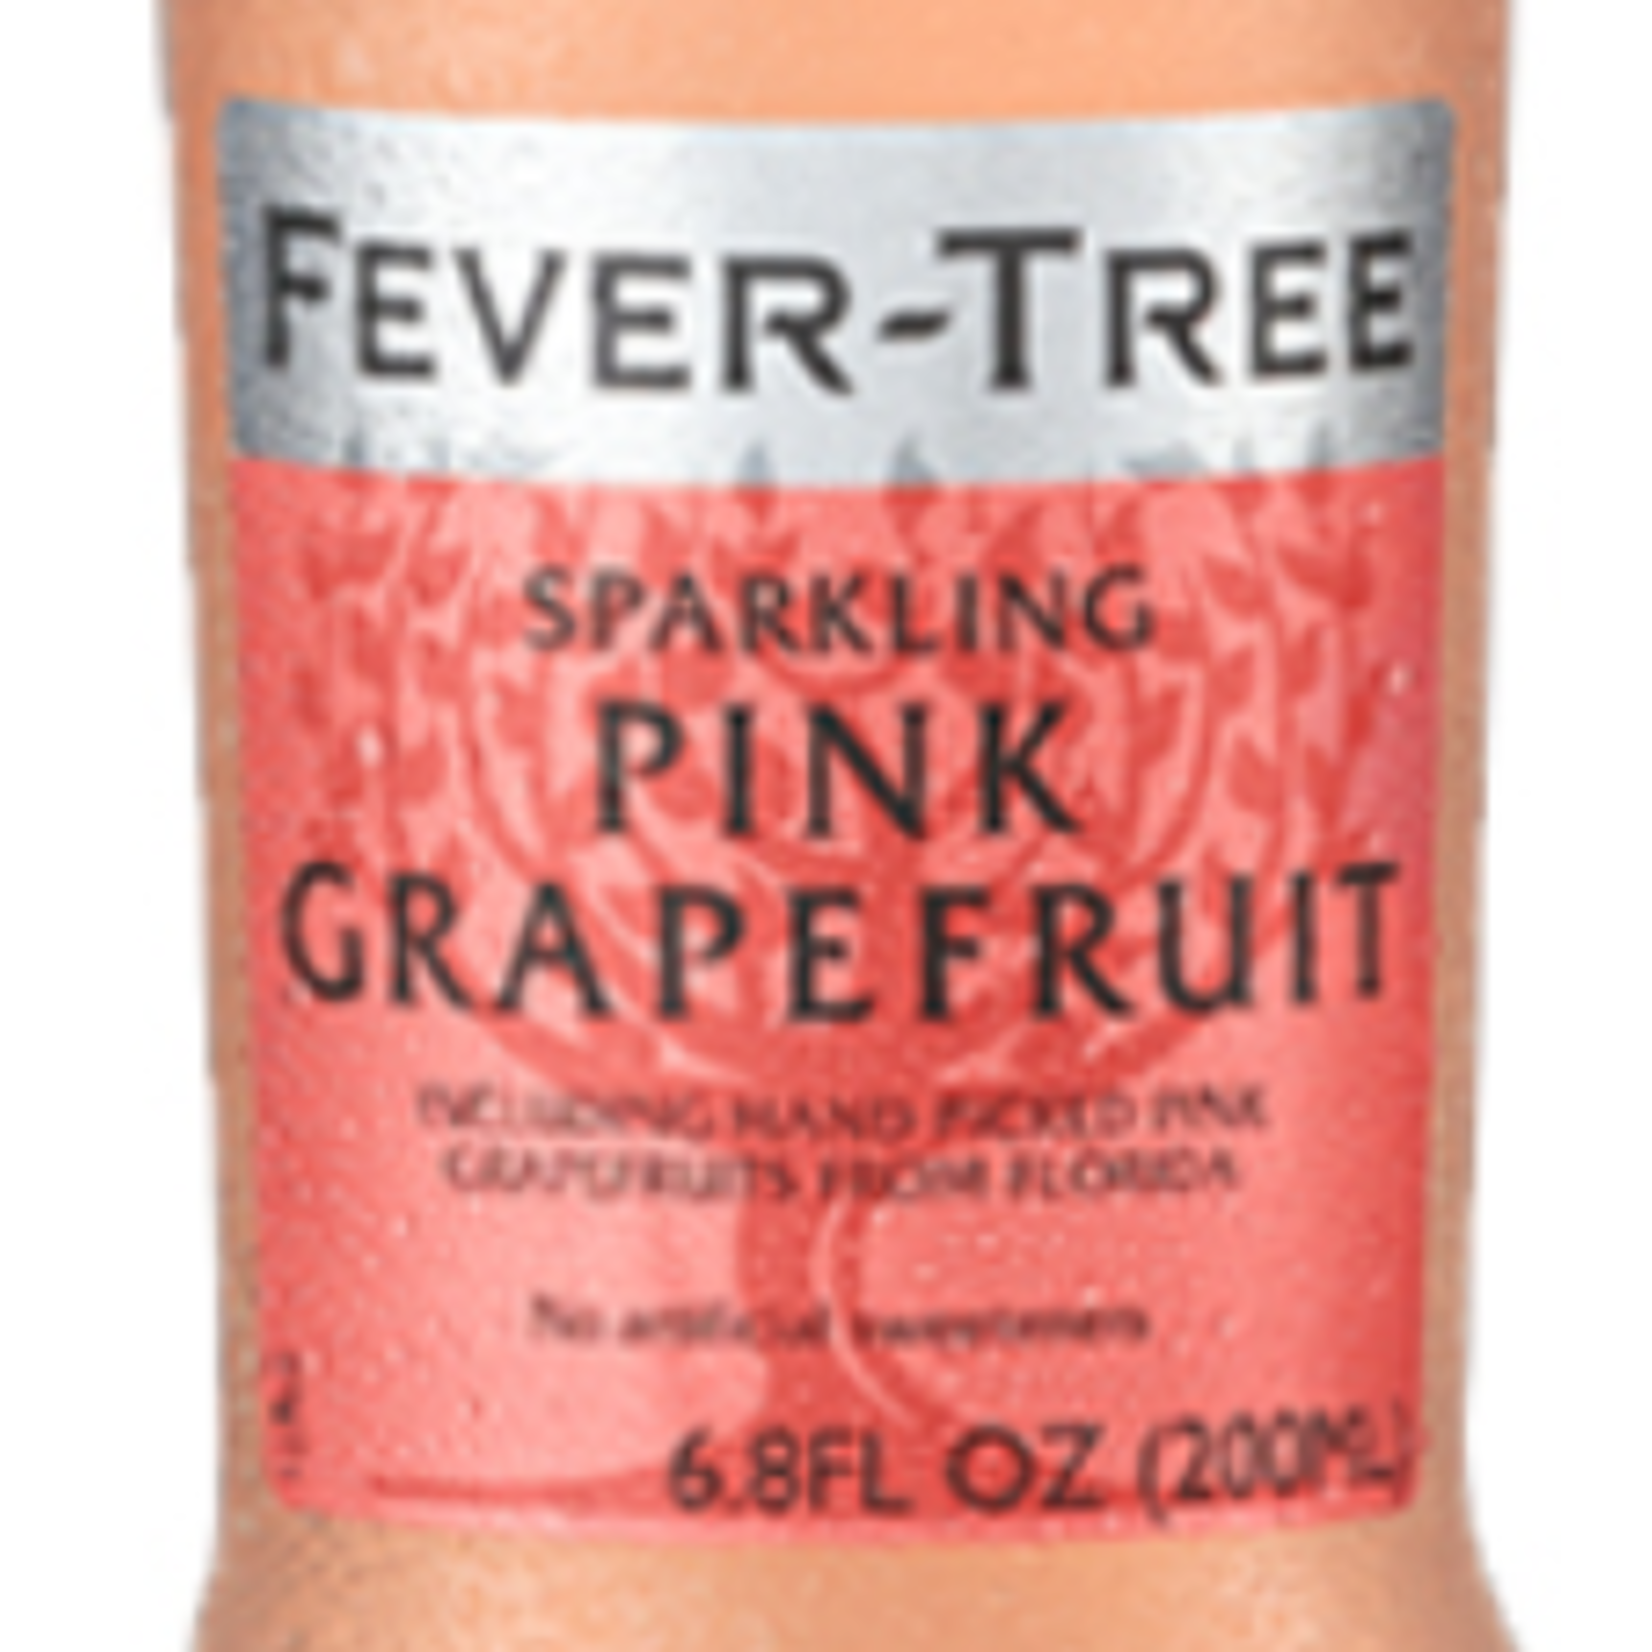 Fever-Tree Sparkling Pink Grapefruit (1) 16.9 fl oz (PRICED PER BOTTLE)